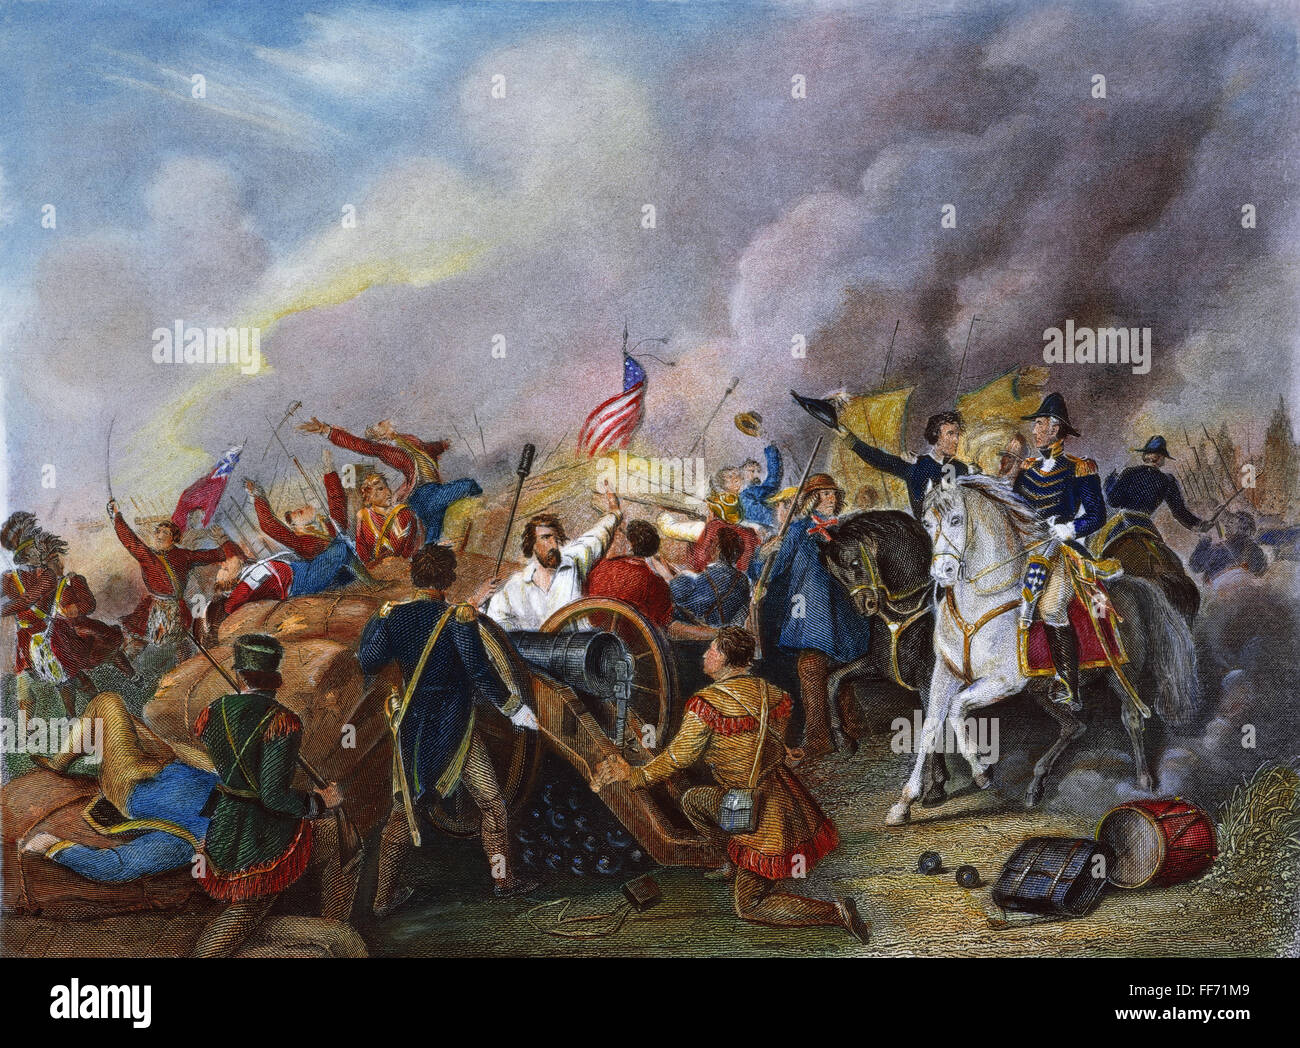 La batalla de Nueva Orleans, 1815. /NAndrew Jackson en la batalla de Nueva Orleans, el 8 de enero de 1815. Acero grabado, 1858. Foto de stock